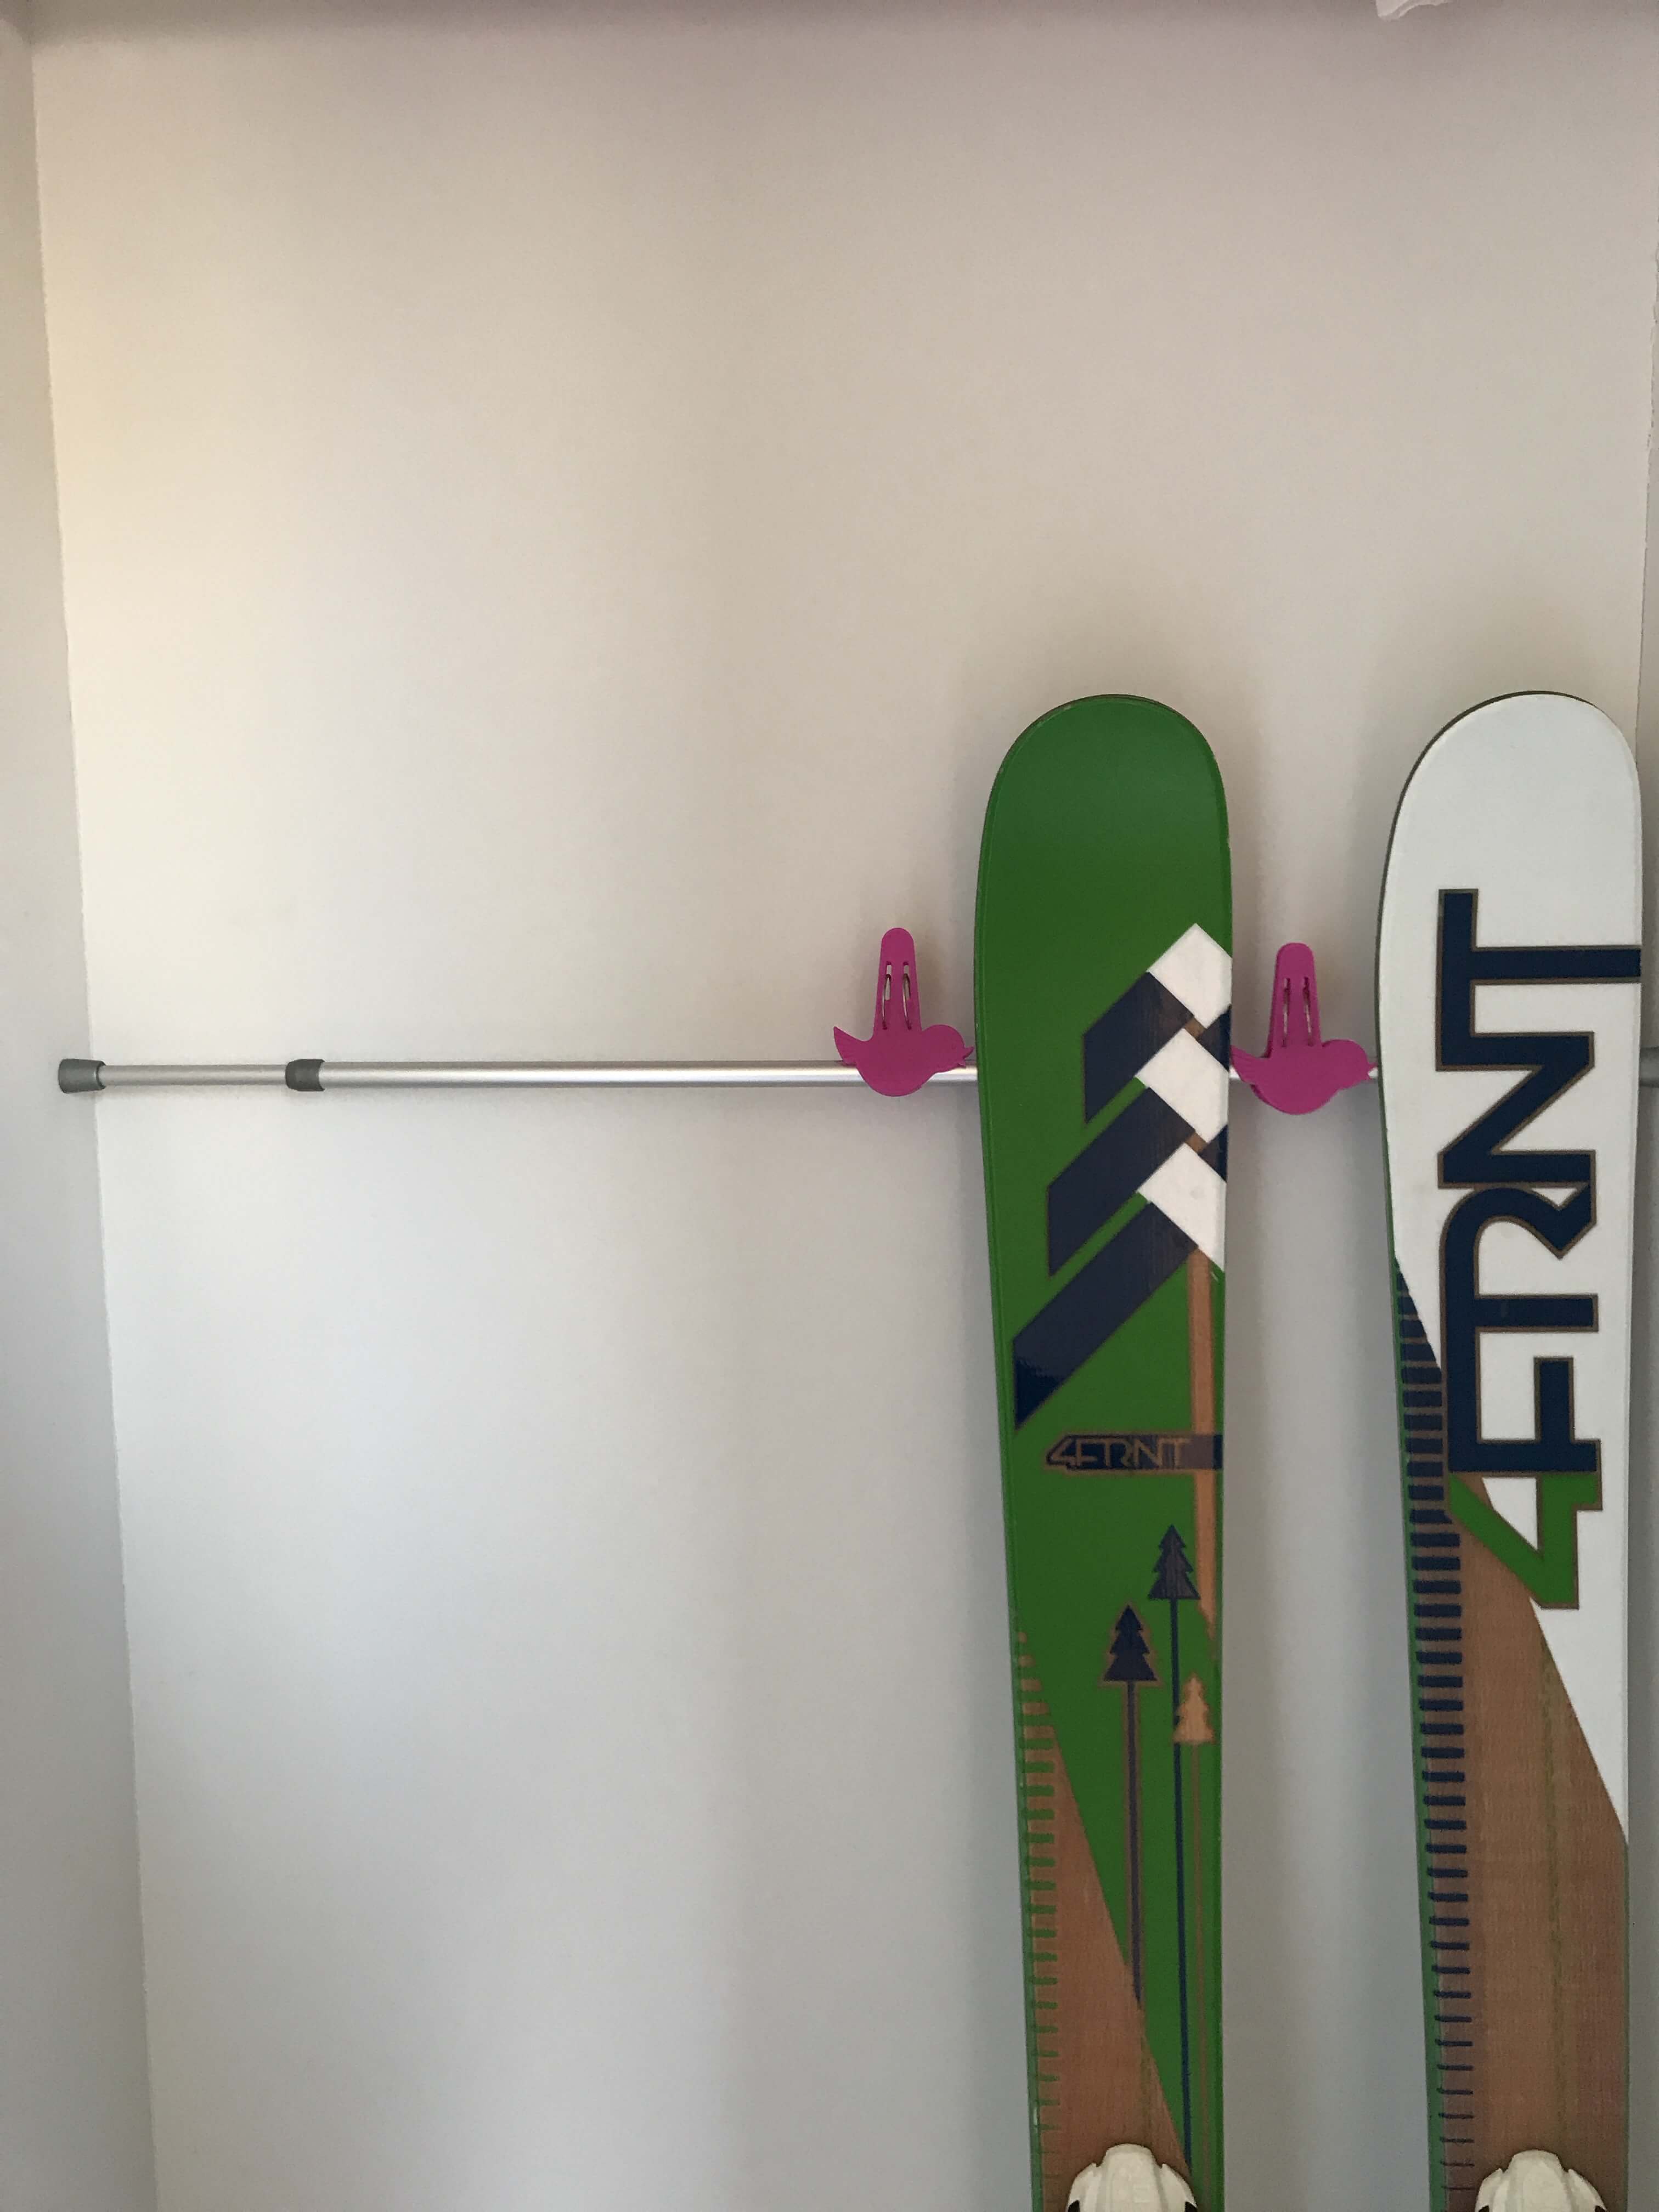 超簡単 500円で作れる スキー スノボ板の簡易ラック 無印良品の家のブログ Annyの木の家